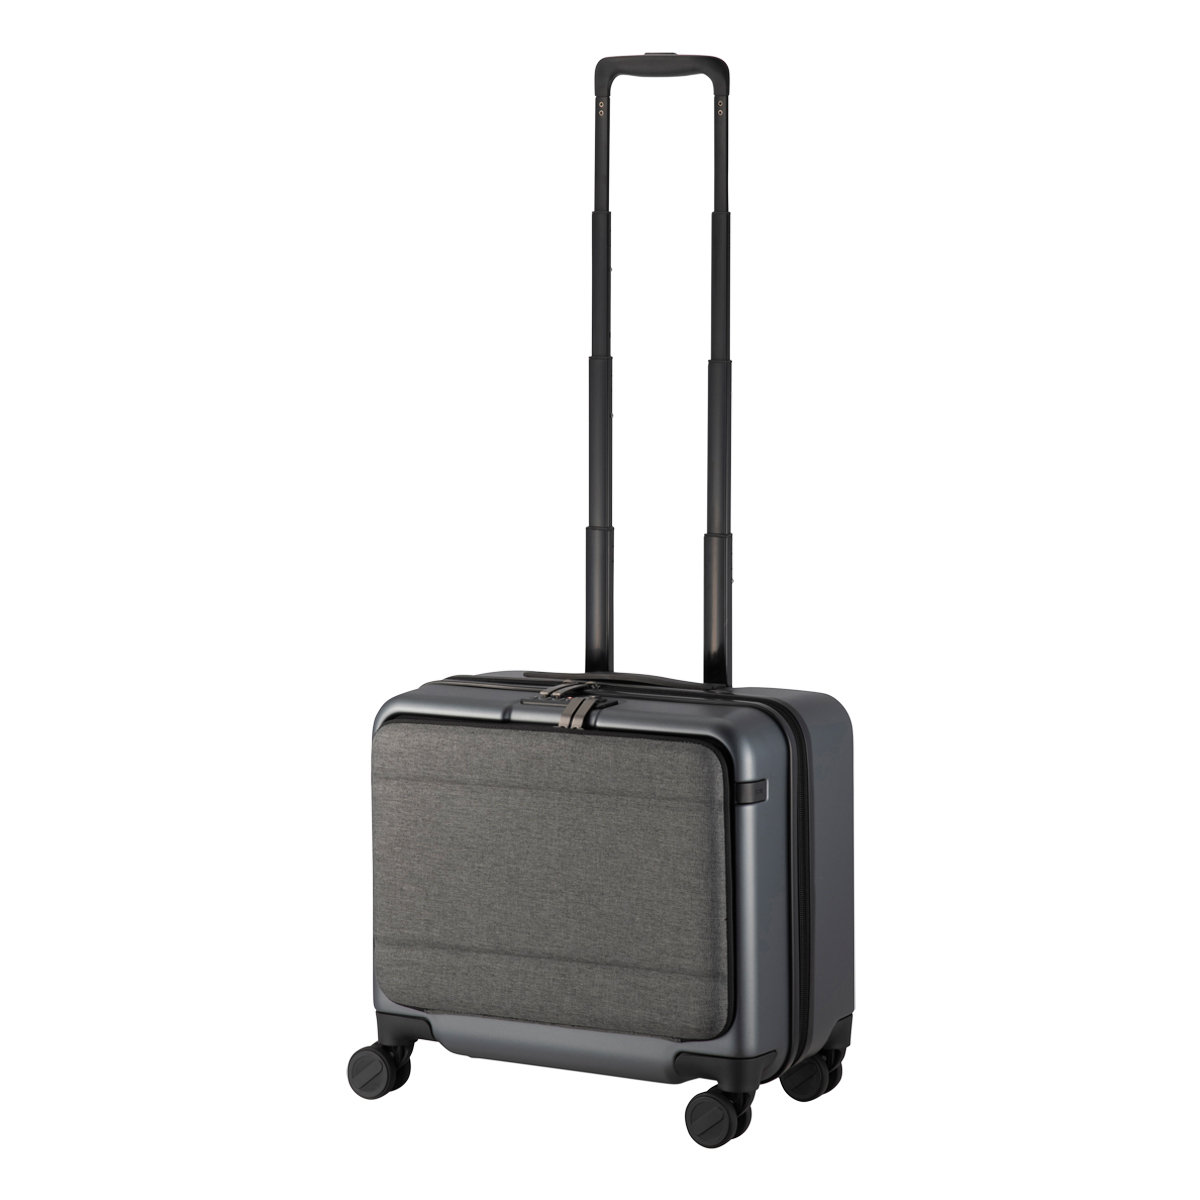 エースジーン スーツケース 28L 3kg 40cm コンビクルーザーTR 05151 ace.GENE | 出張 ビジネス キャリーケース 横型  フロントオープン 機内持ち込み可